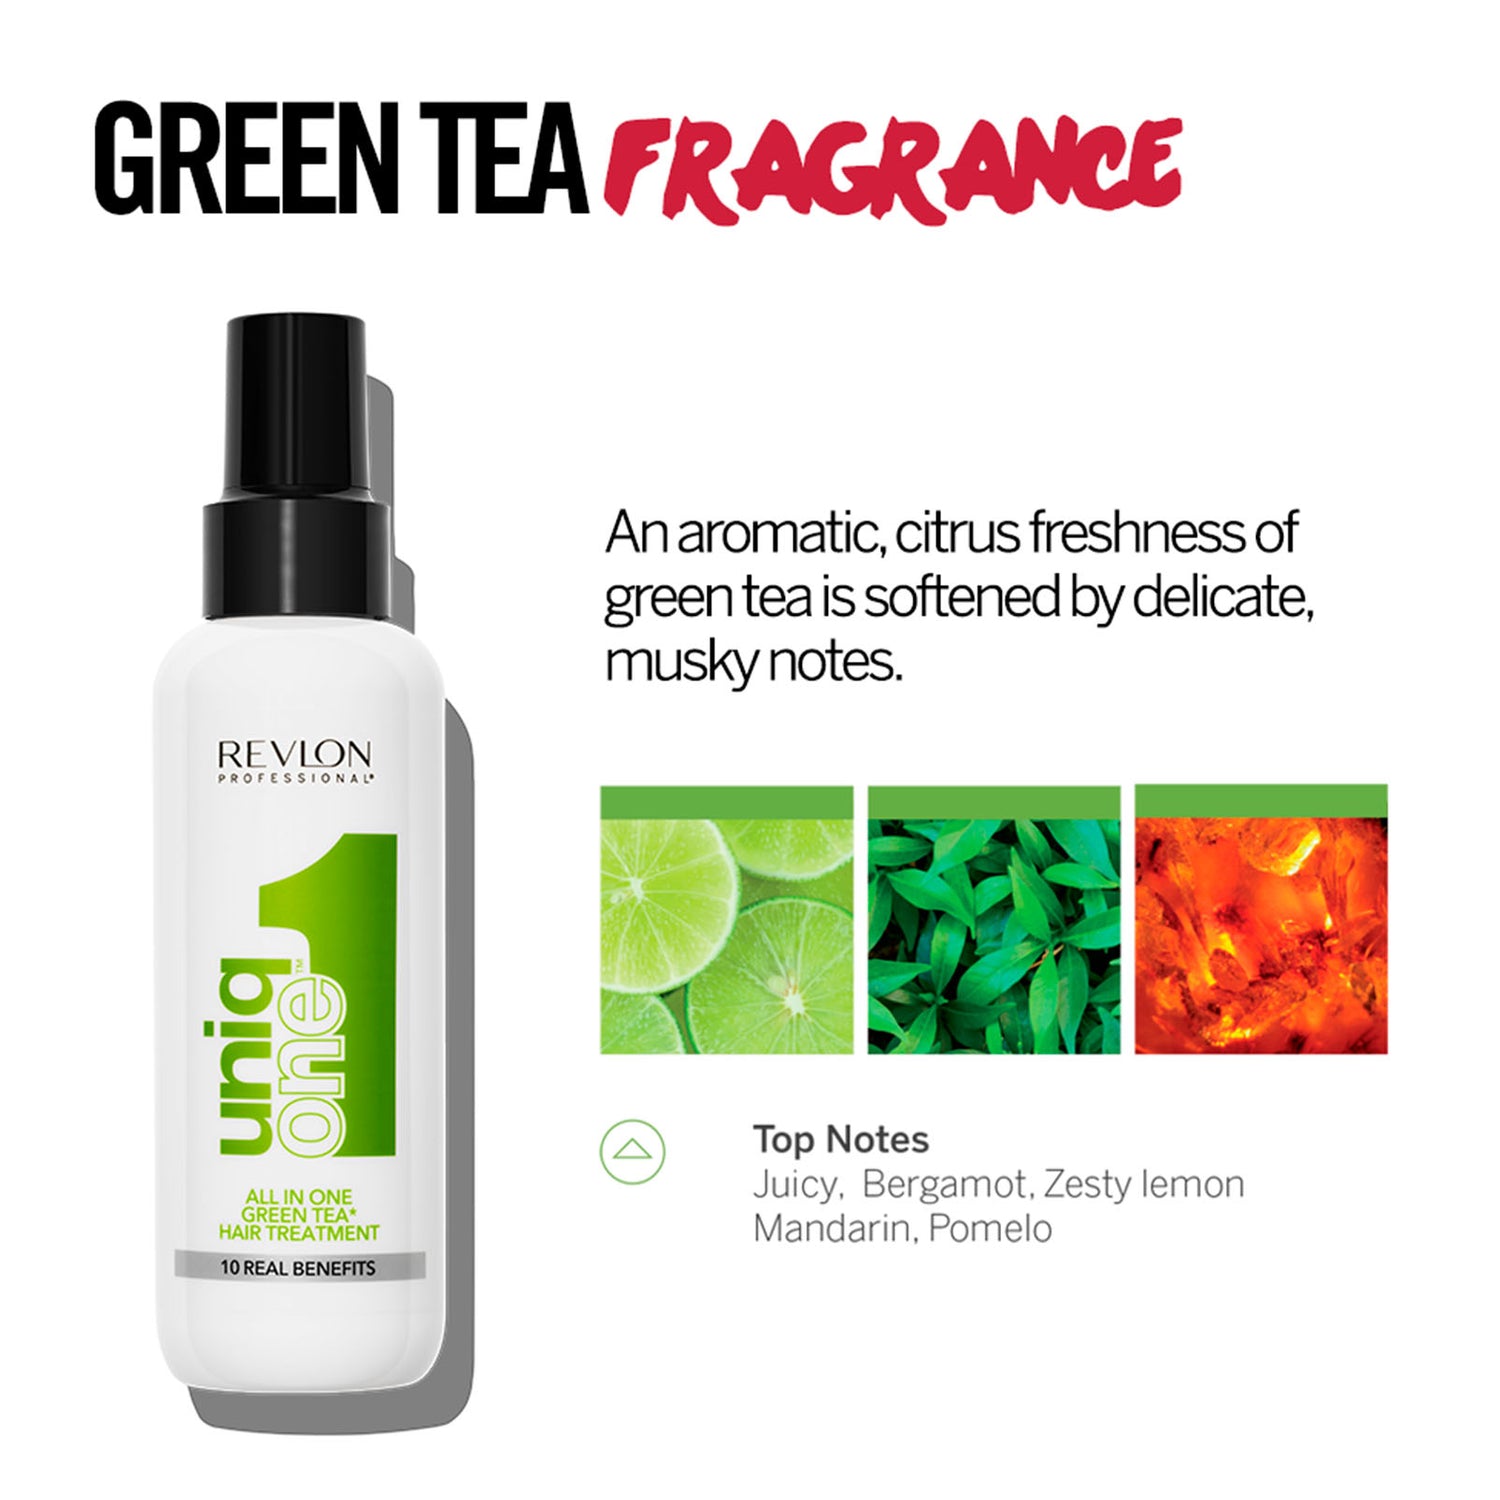 Uniqone Hair Treatment Green Tea 5 oz.